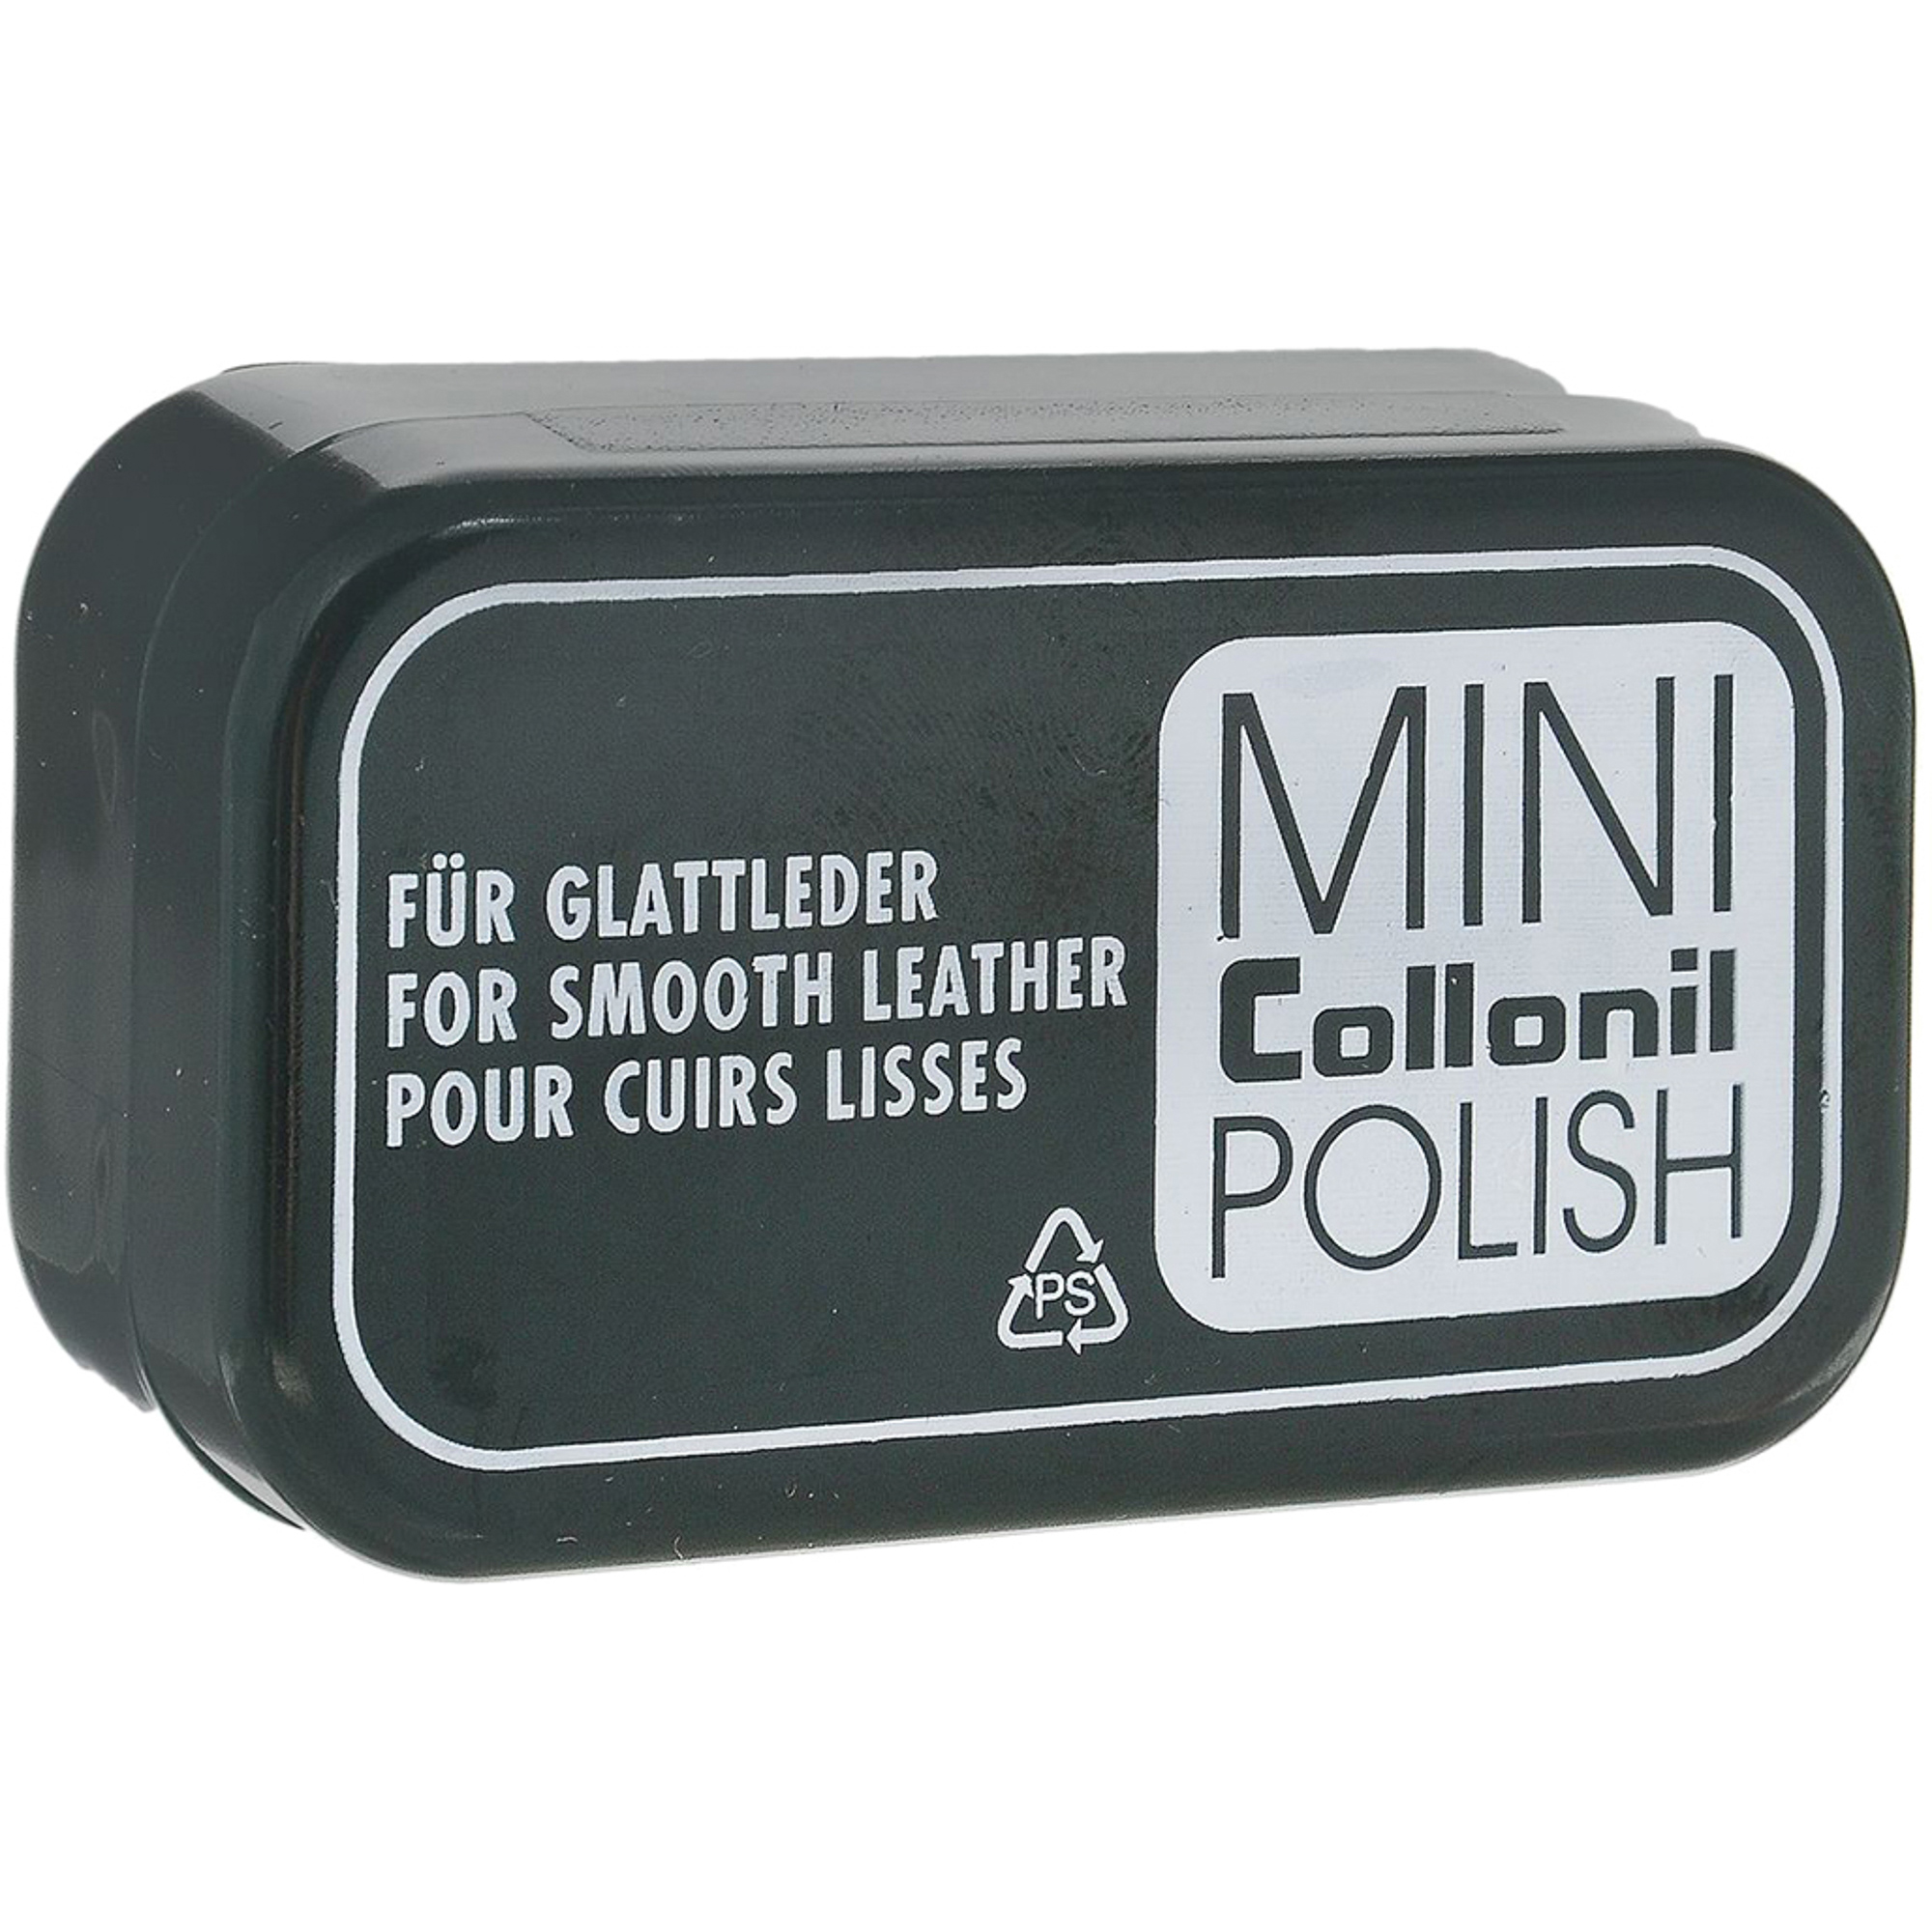 Губка для полировки Collonil Mini Polish губка sitil для полировки обуви из гладкой кожи темно коричневая